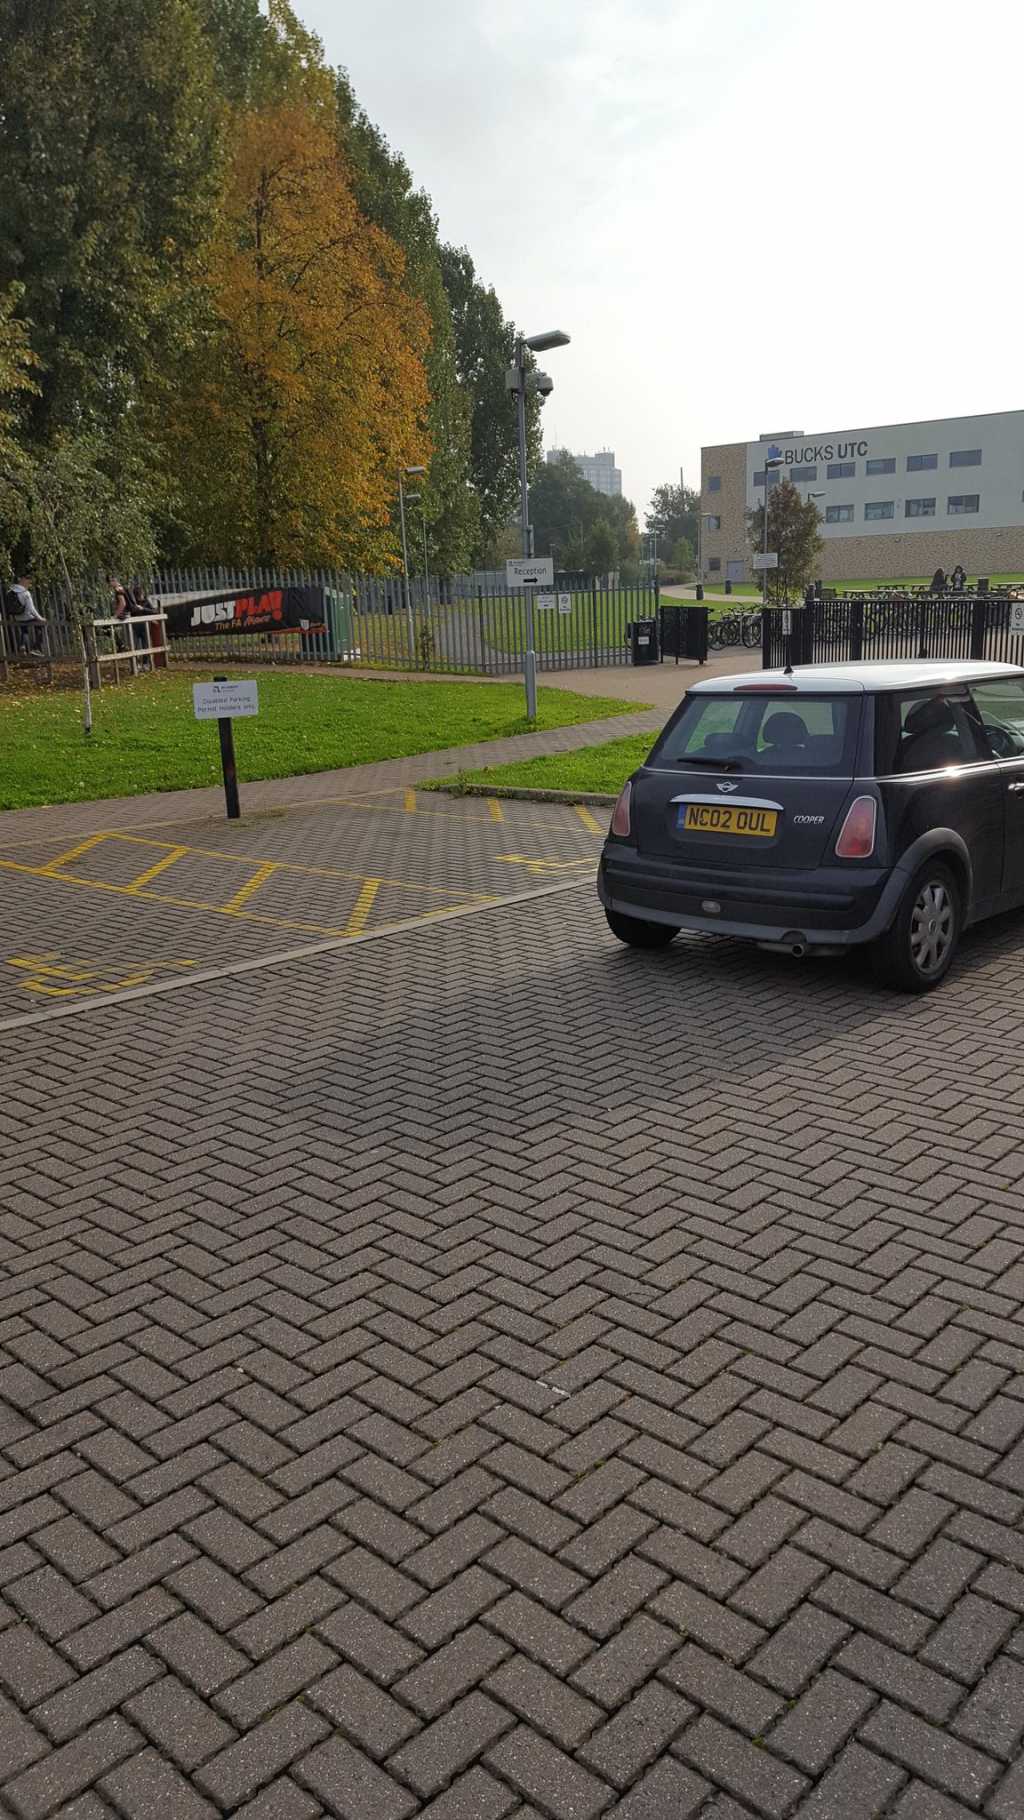 NC02 OUL displaying Selfish Parking